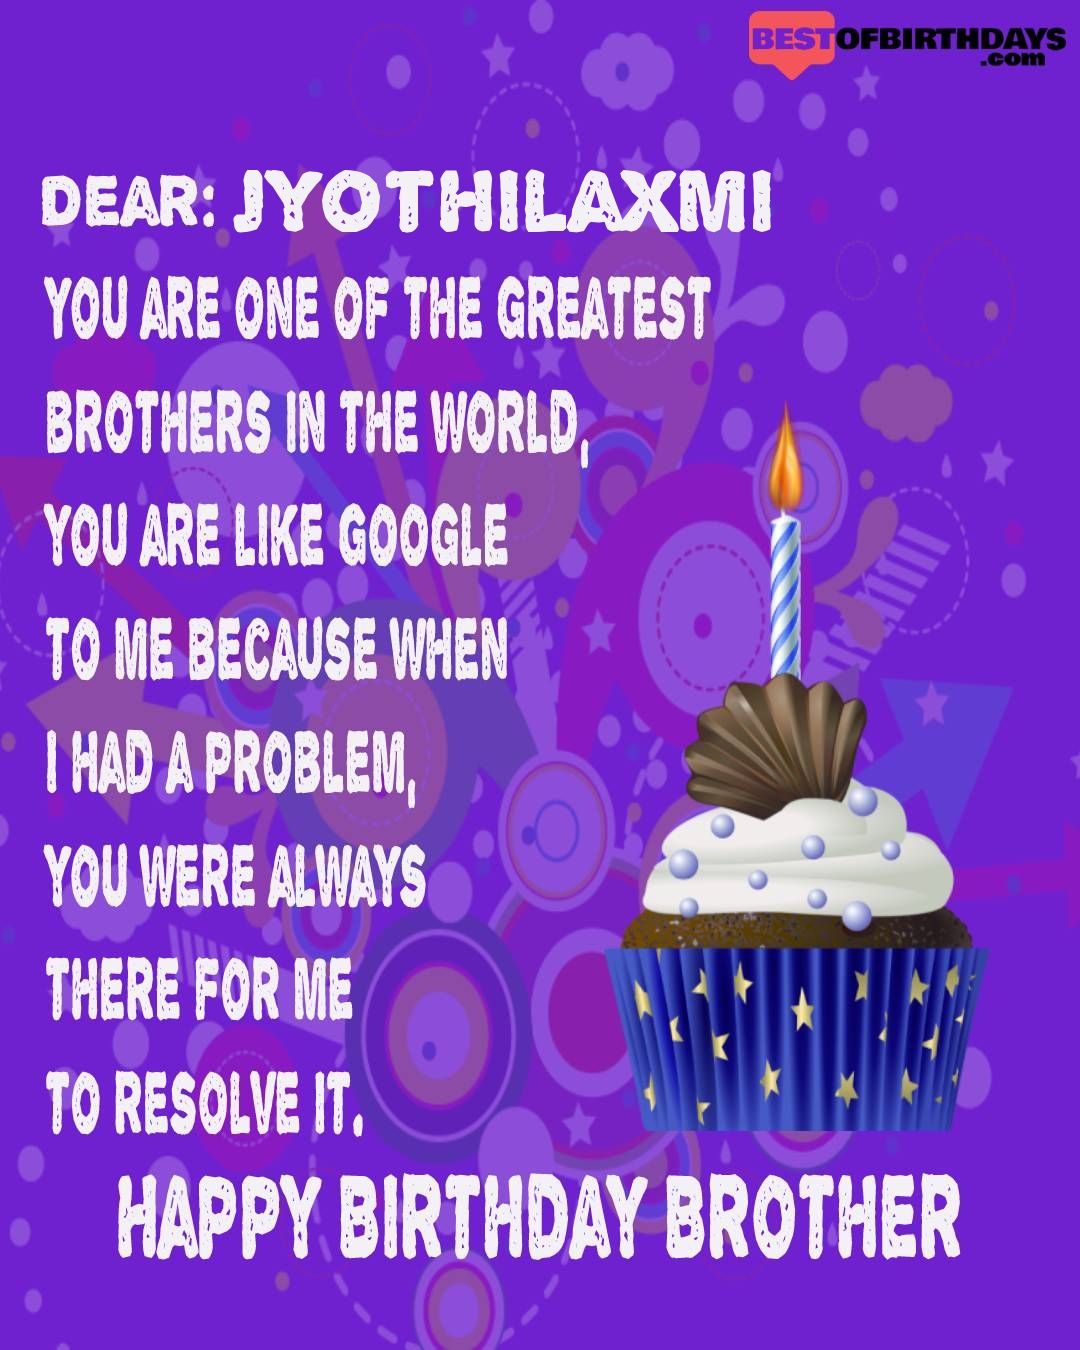 Happy birthday jyothilaxmi bhai brother bro